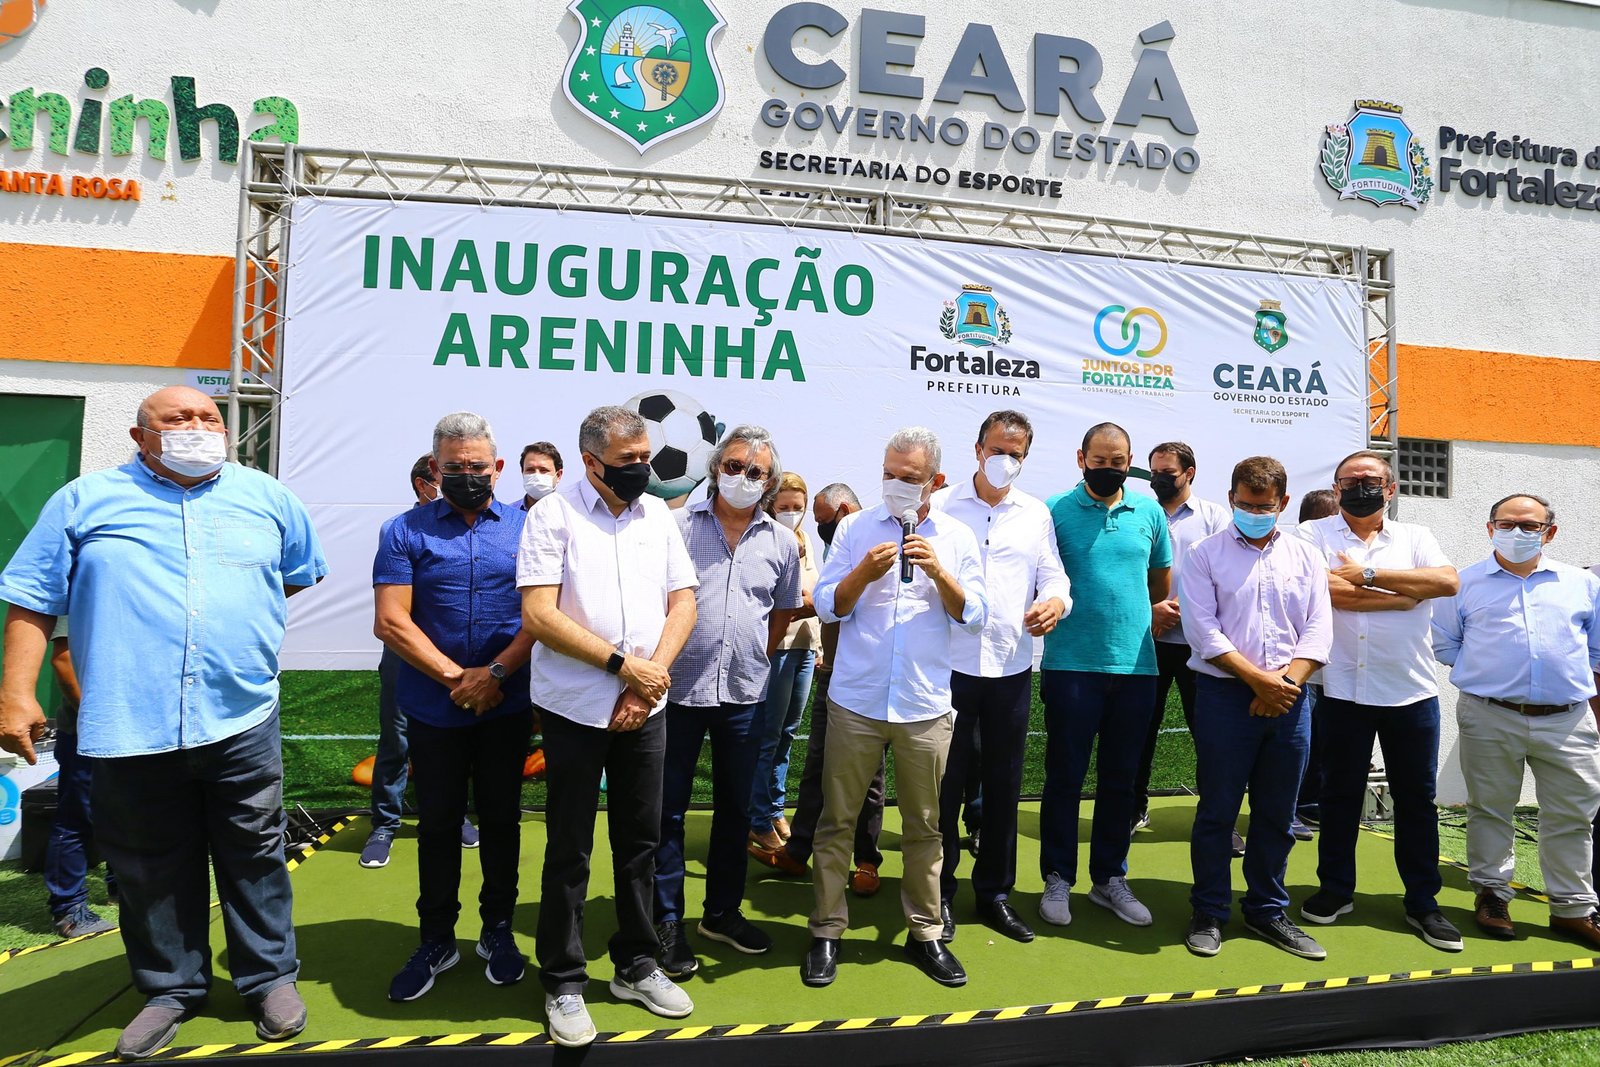 Juntos por Fortaleza: Prefeitura e Governo do Ceará inauguram areninha no bairro Coaçu